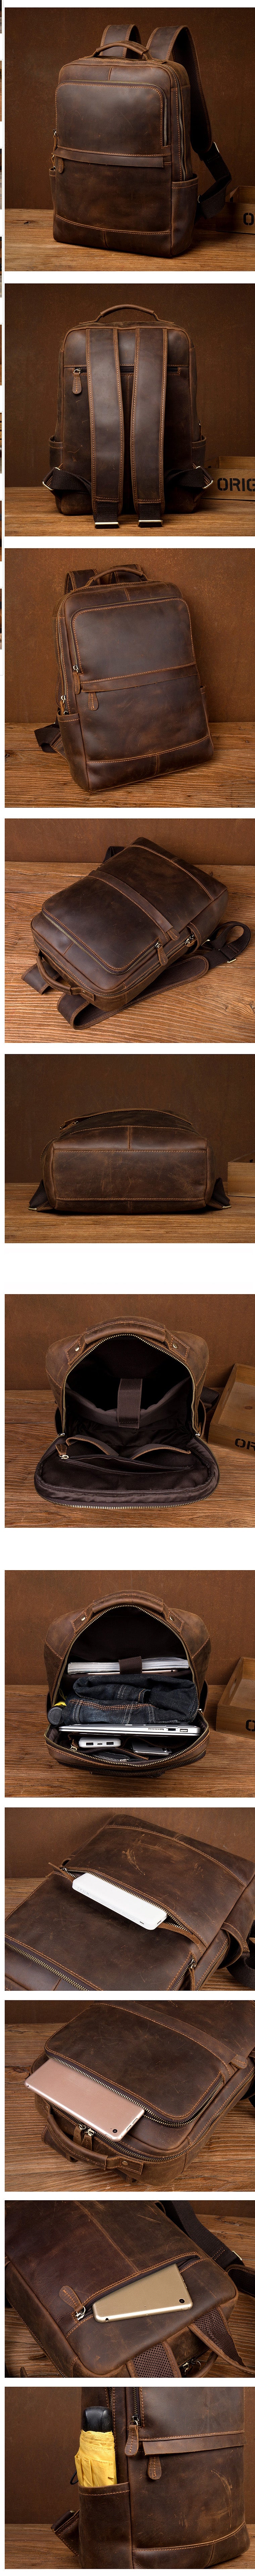 Details of Woosir Vintage Leather Backpack for Laptop